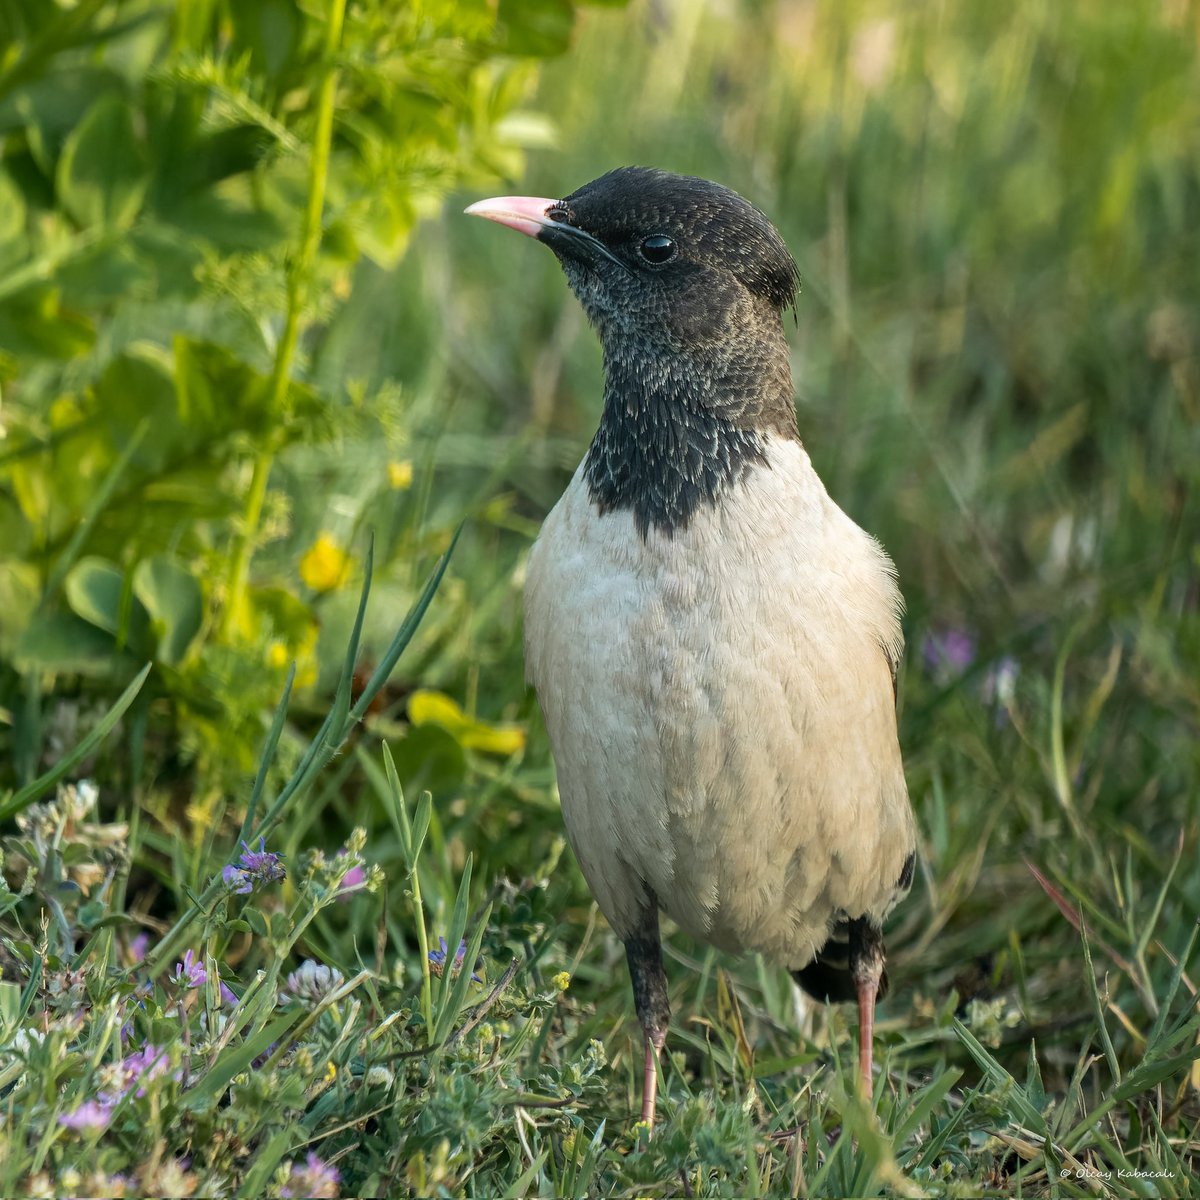 Rosy Starling
Ala Sığırcık
#hangitür #birdphotography #wildlifephotography